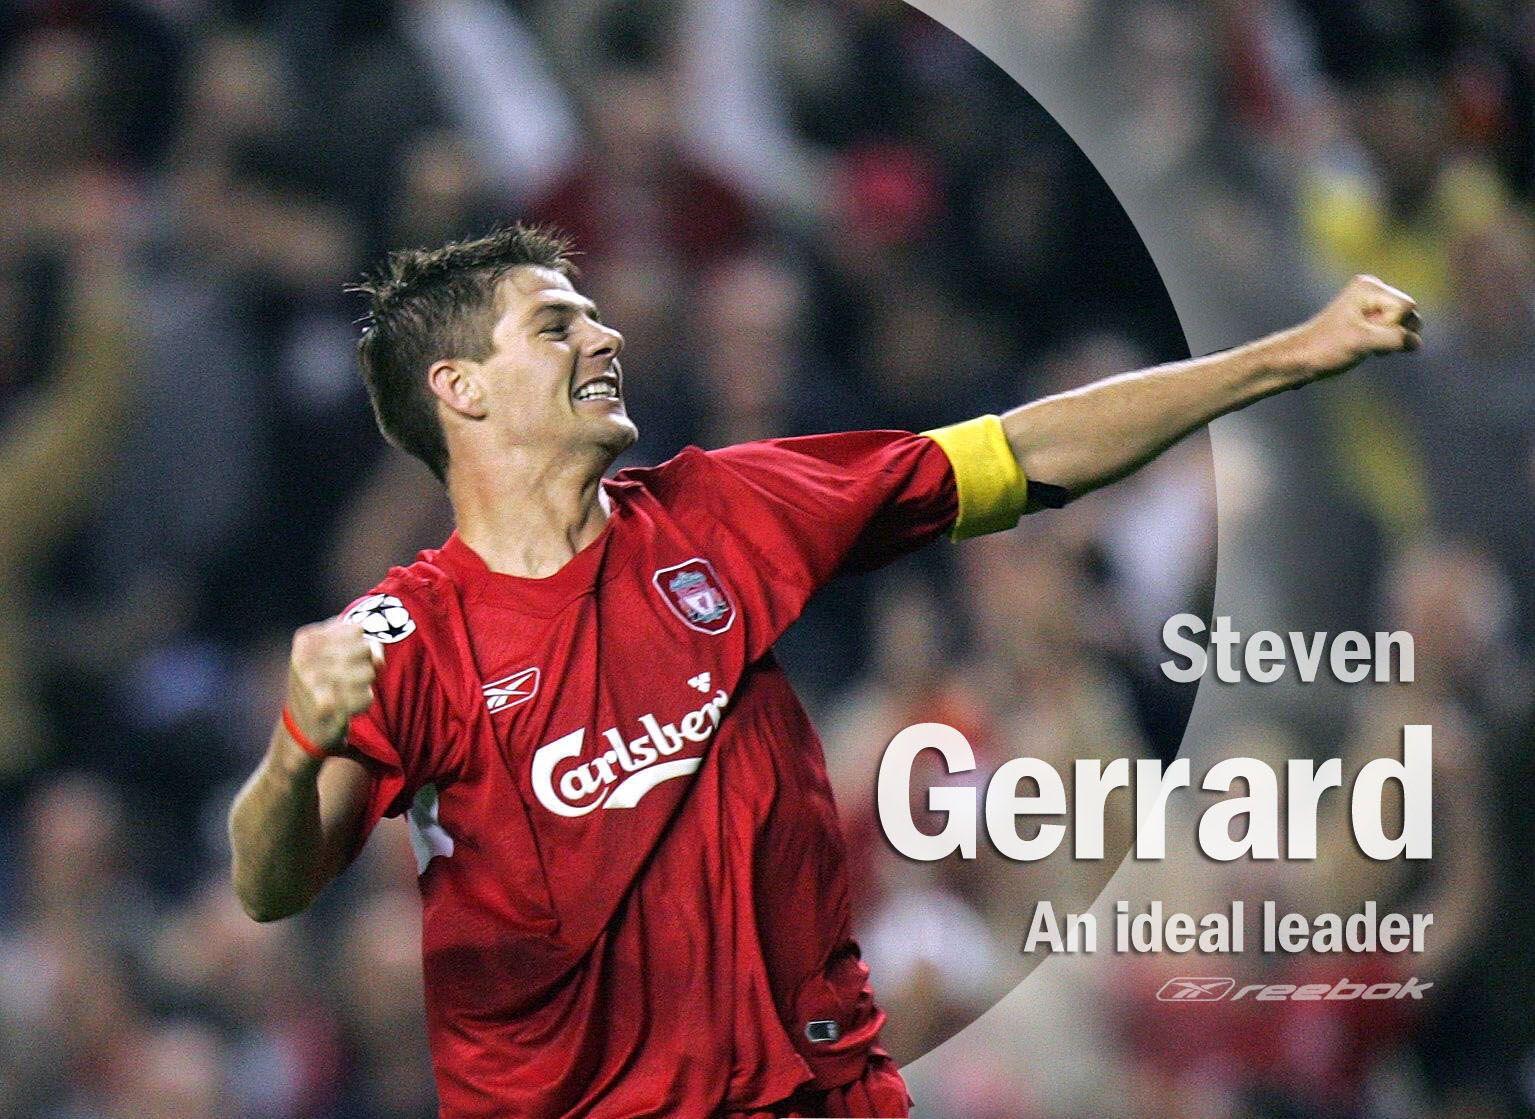 Steven Gerrard Wallpaper Liverpool Wallpaper Steven Gerrard